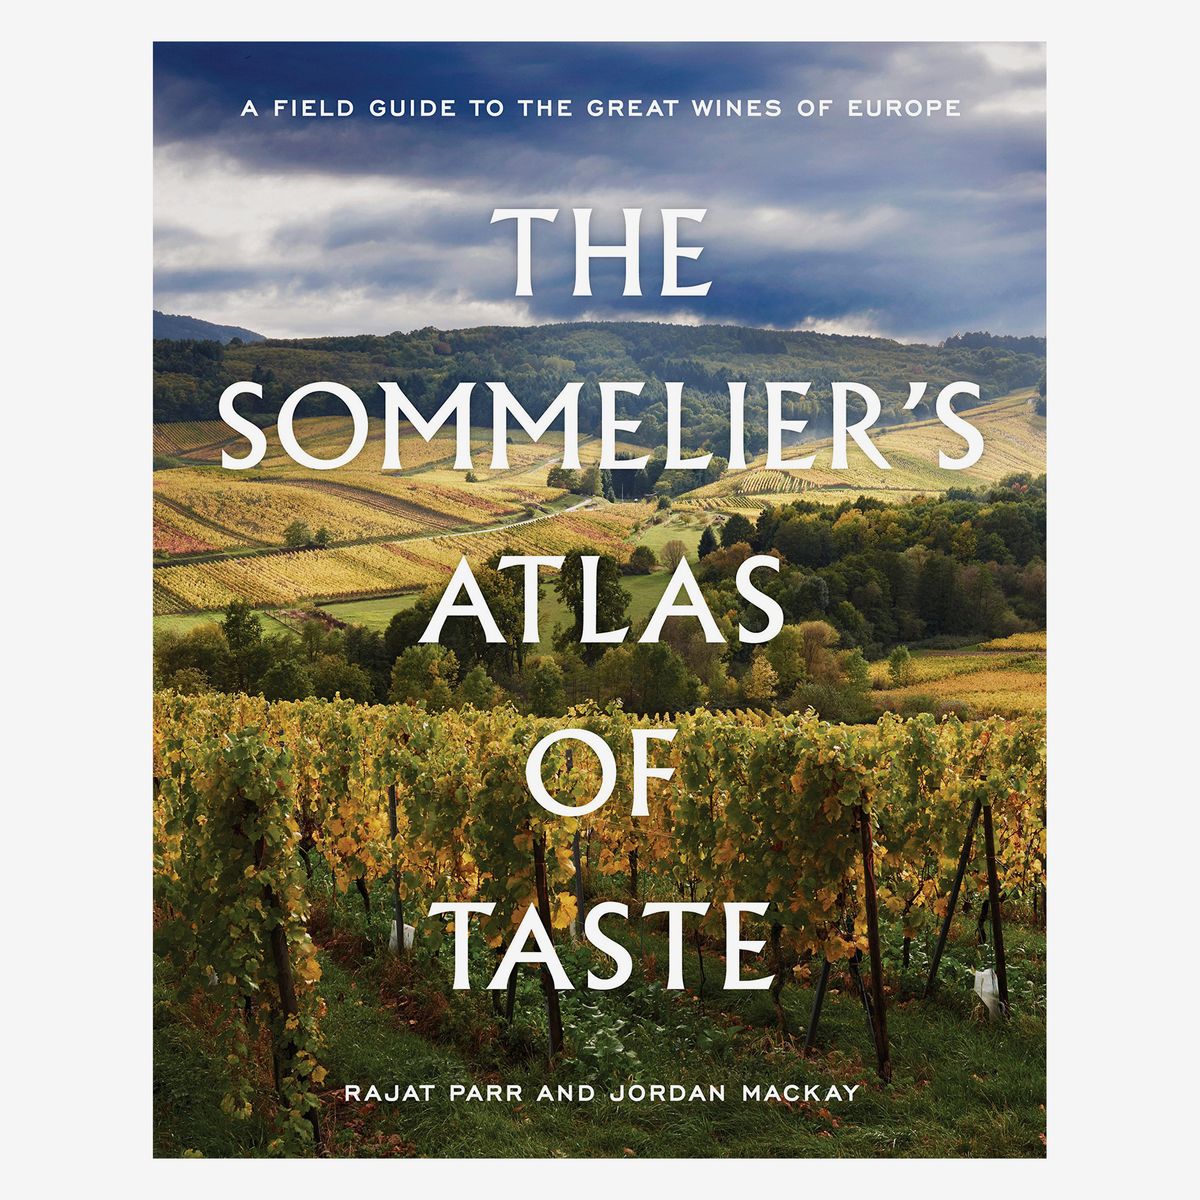 'The Sommelier's Atlas of Taste,' by Rajat Parr and Jordan Mackay